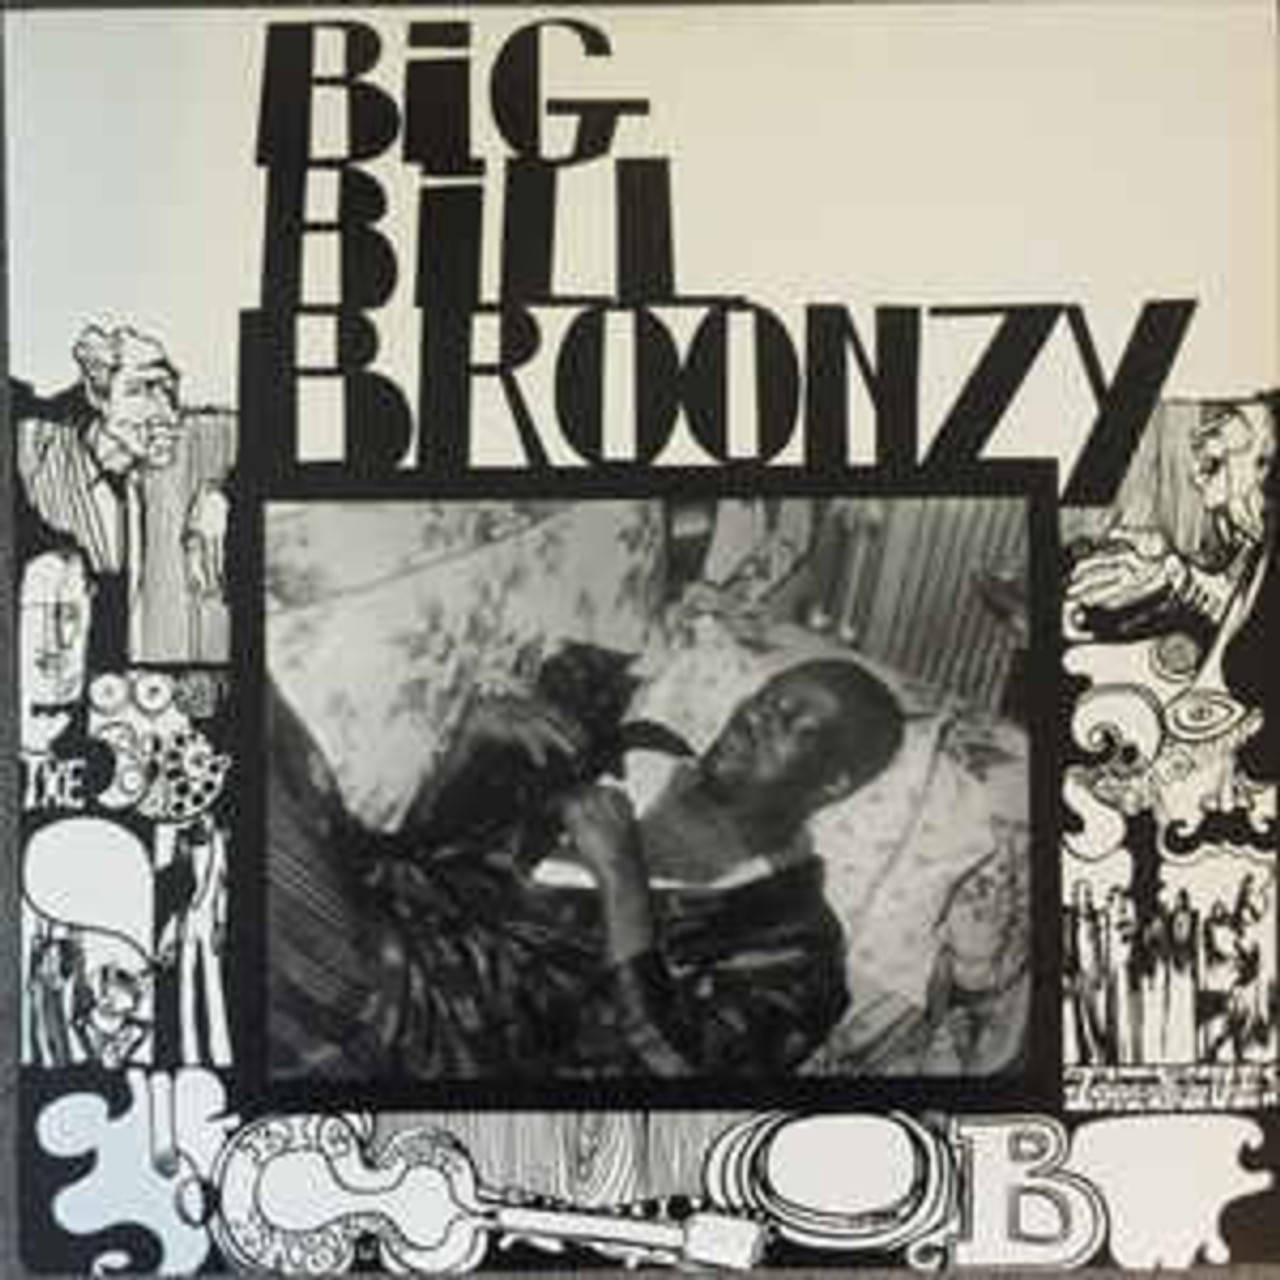 Big Bill Broonzy 1280 X 1280 Wallpaper